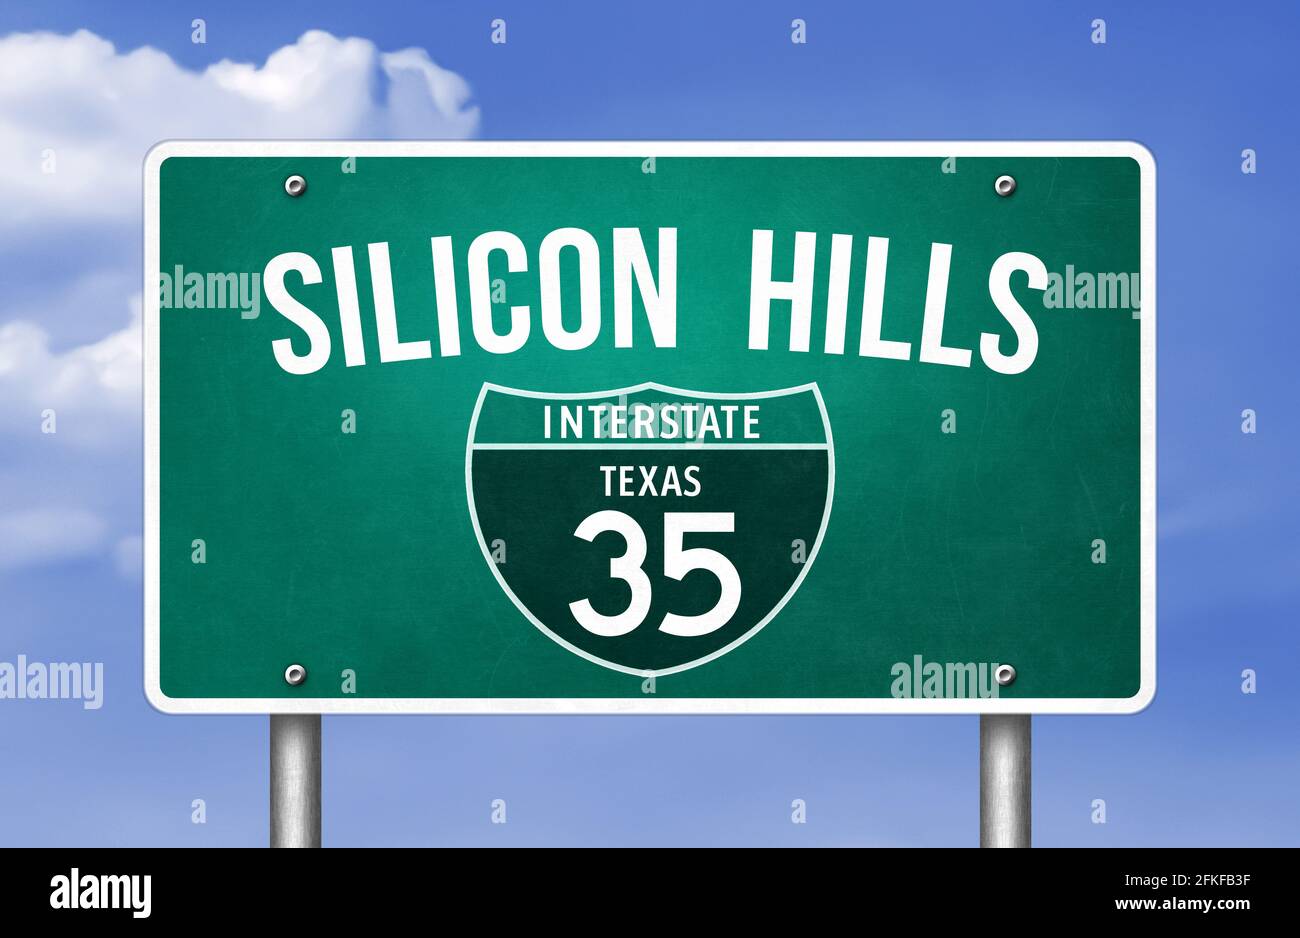 Silicon Hills in Austin, Texas Stock Photo